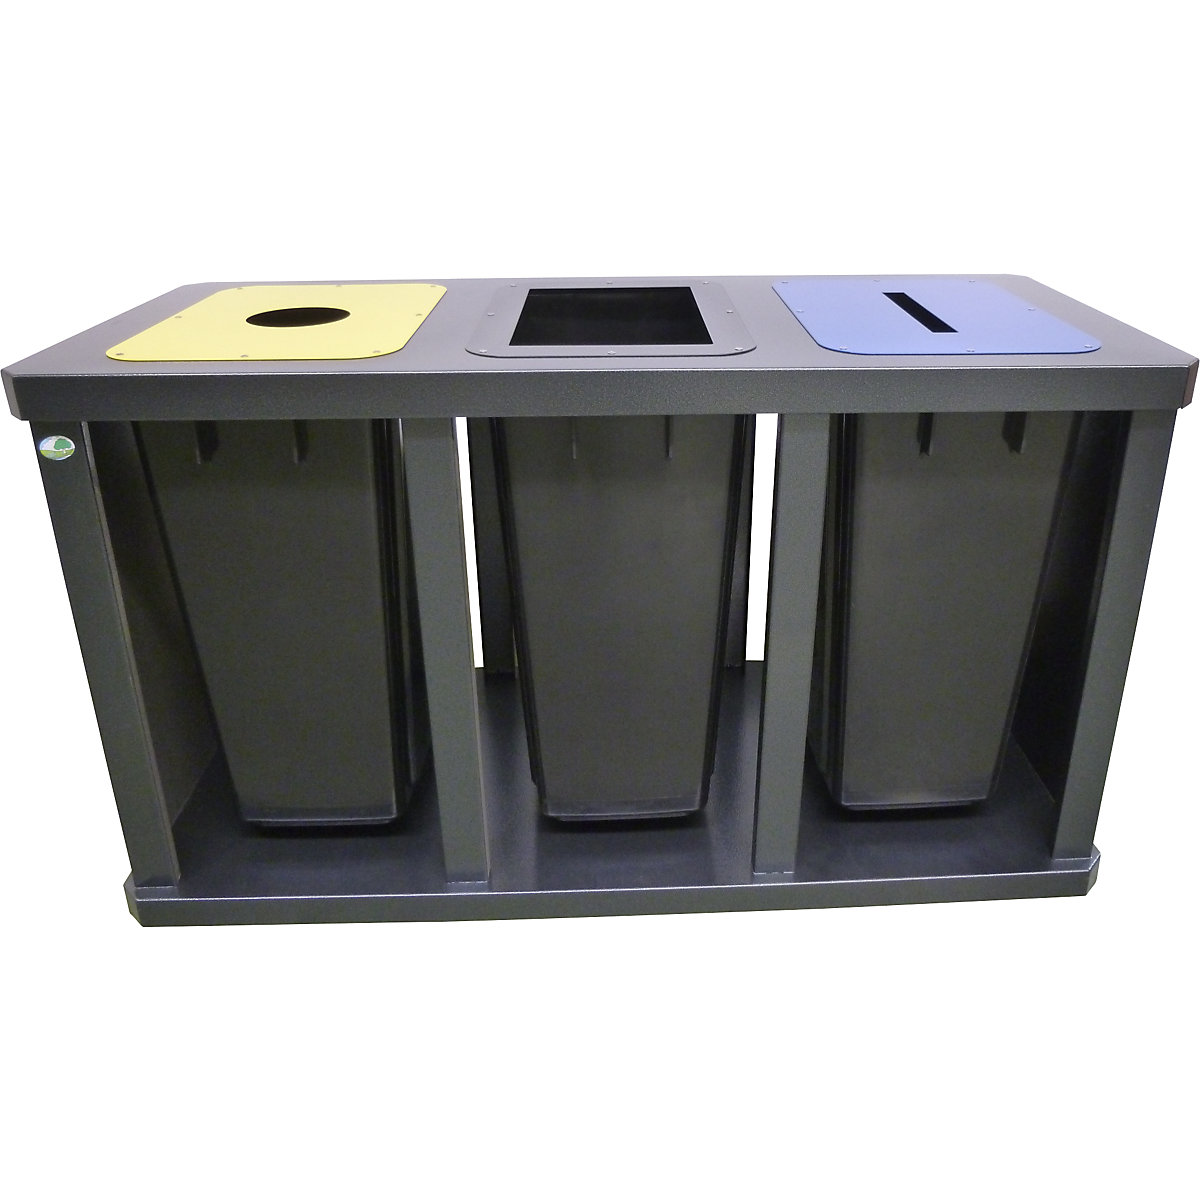 Estação de recolha de materiais recicláveis Tetris - VAR